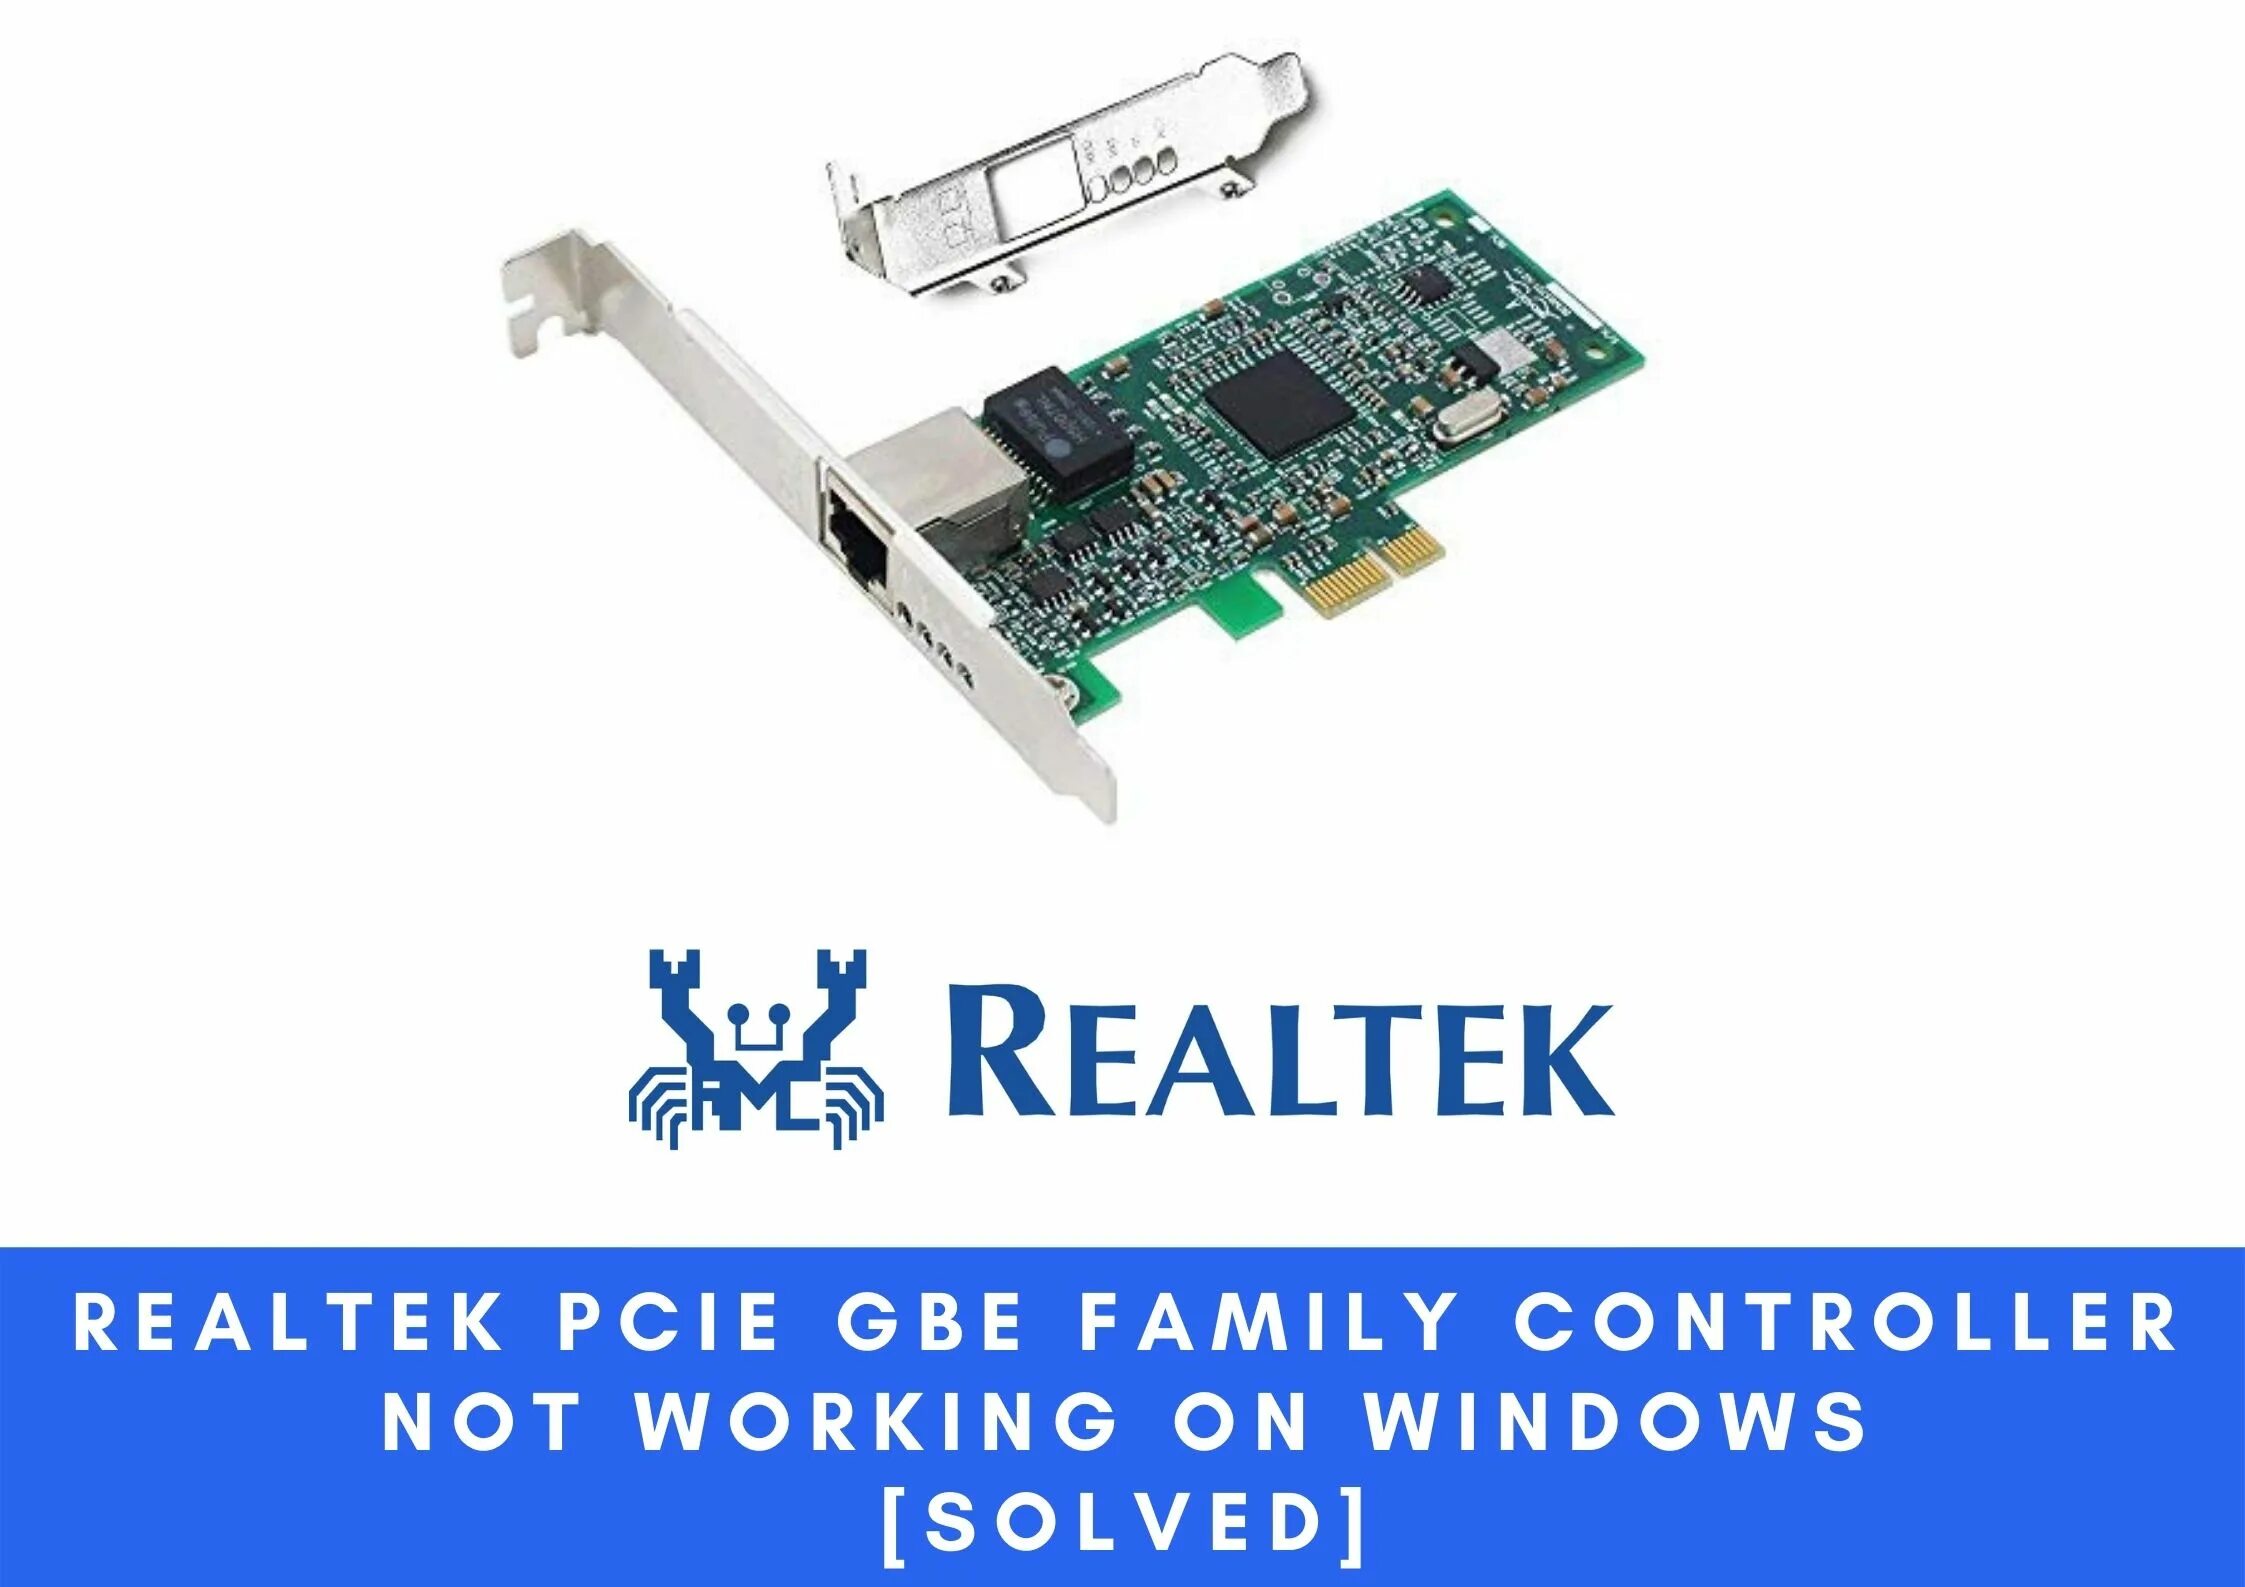 Realtek pci driver. PCIE Fe / GBE / 2.5G. Realtek PCIE Fe GBE 2.5G. Realtek PCIE 2.5GBE Family. PCIE Fe Family Controller.